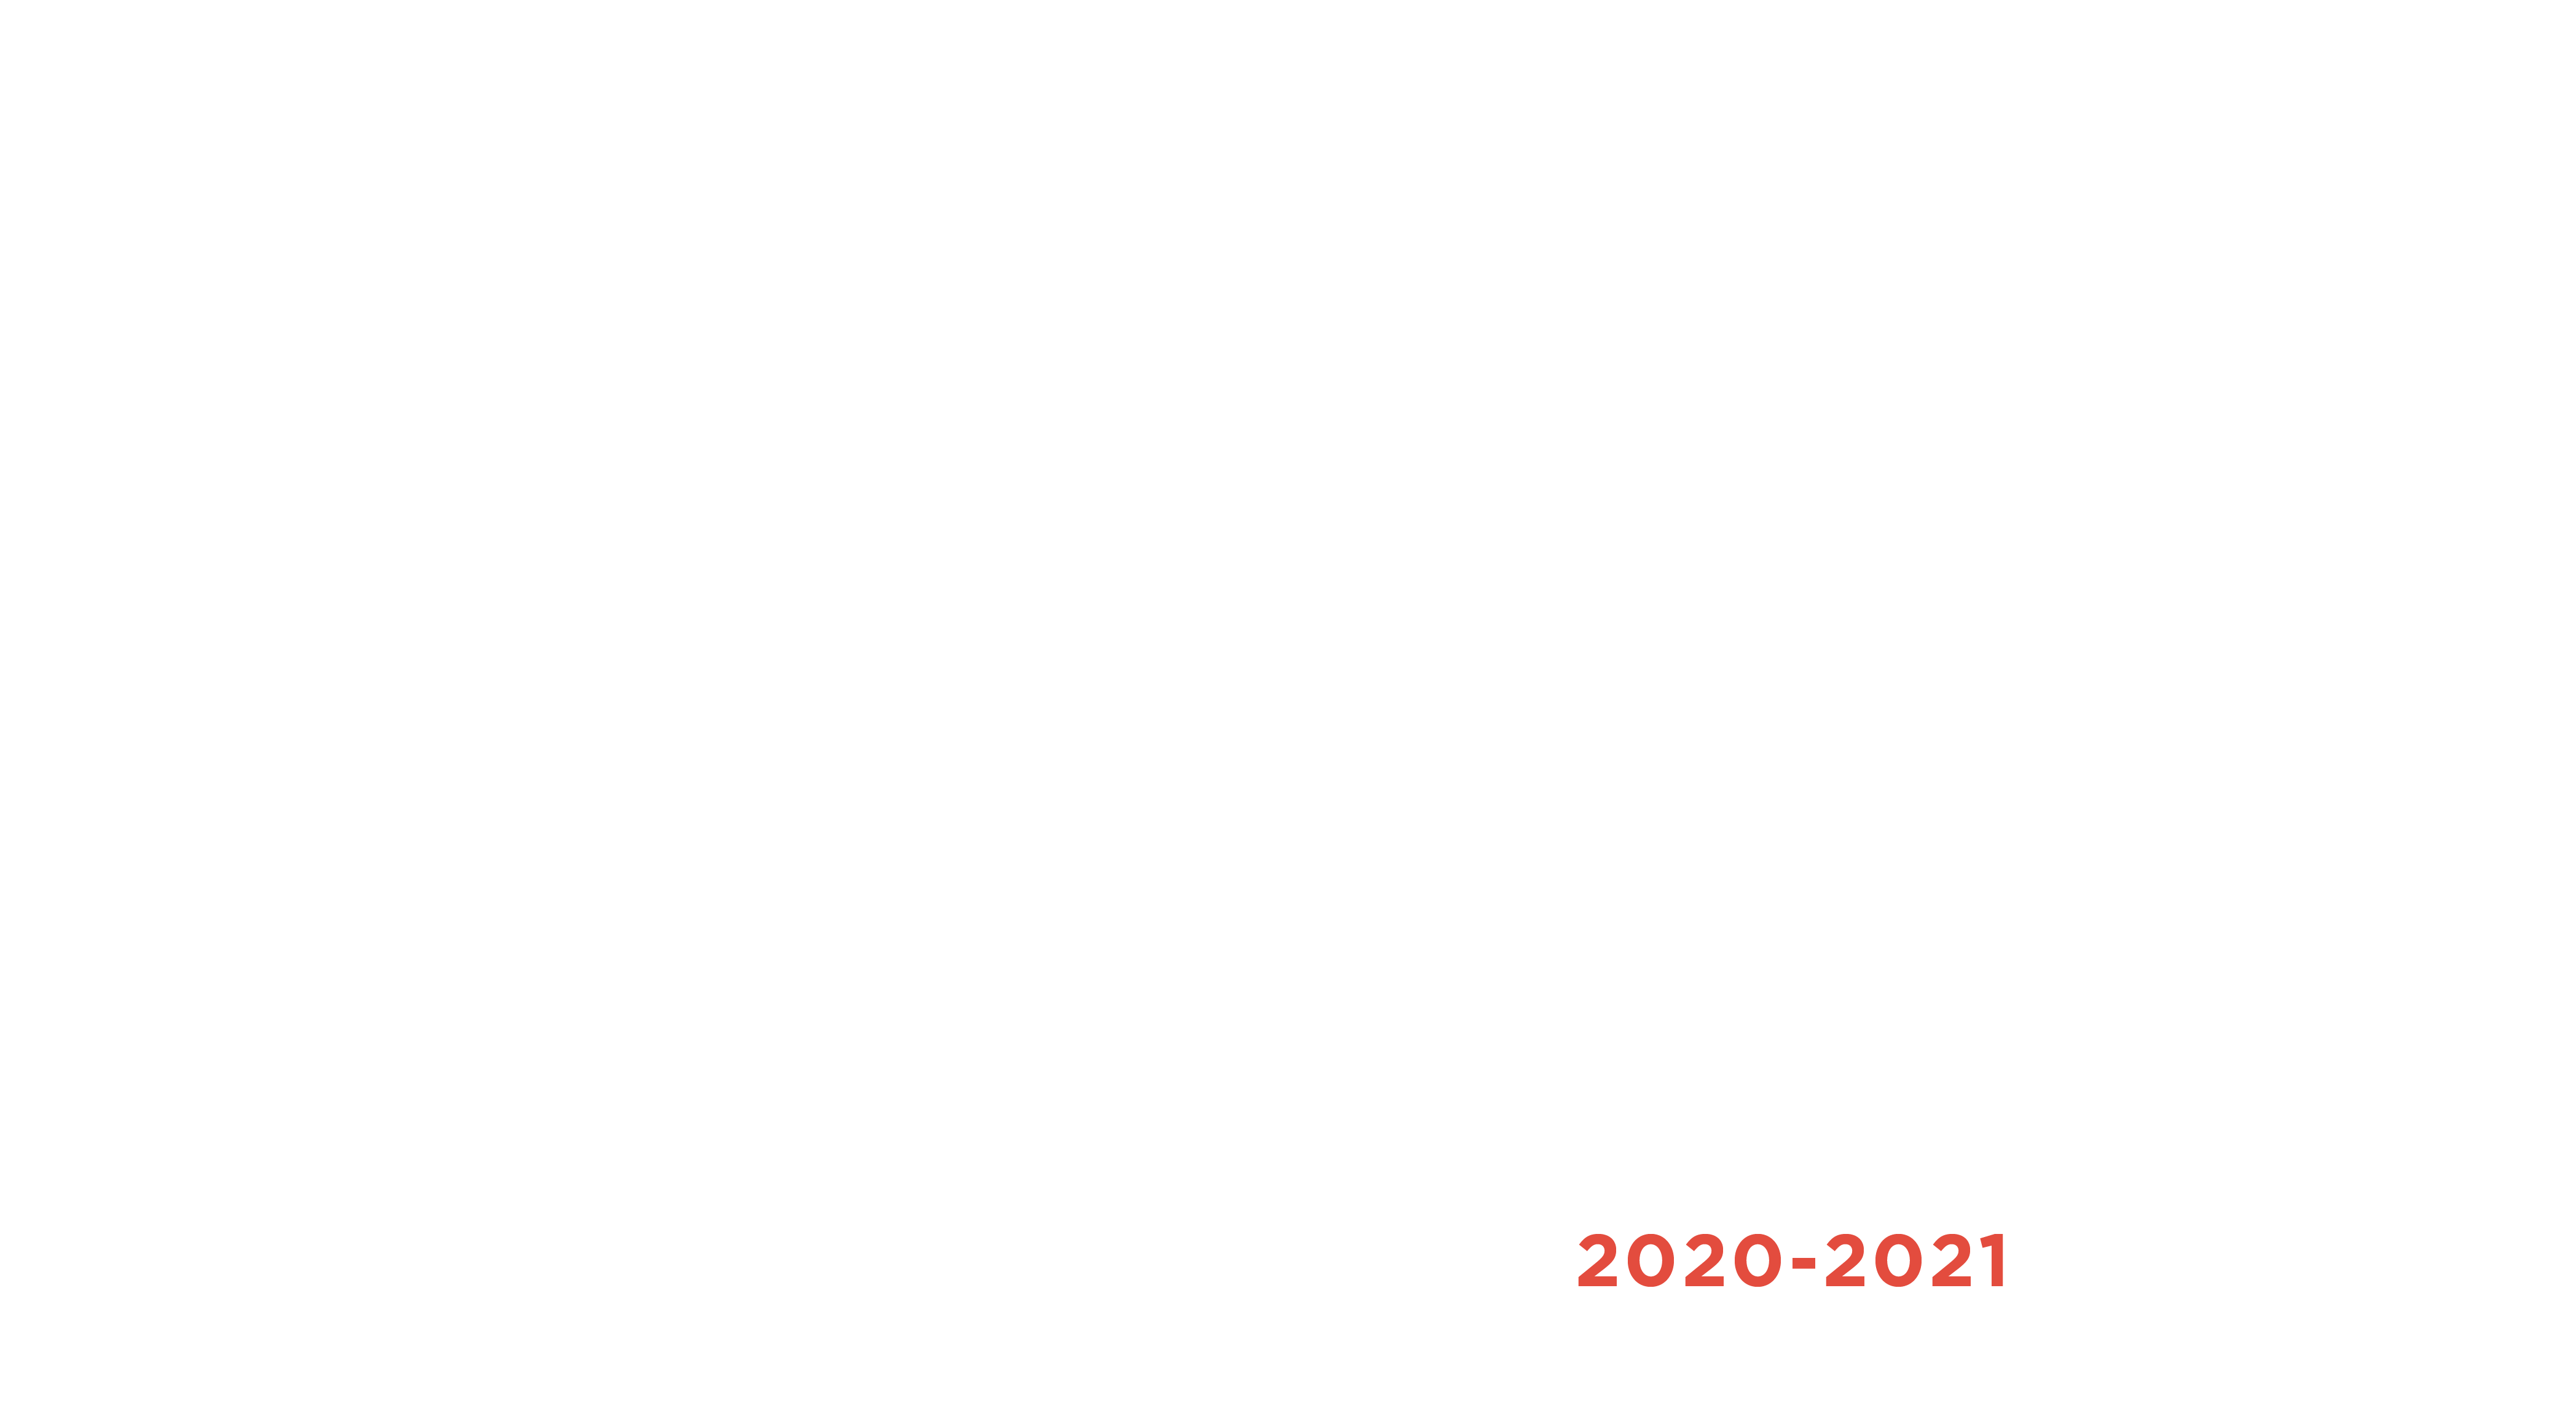 Illinois Promise Annual Report 2020-2021